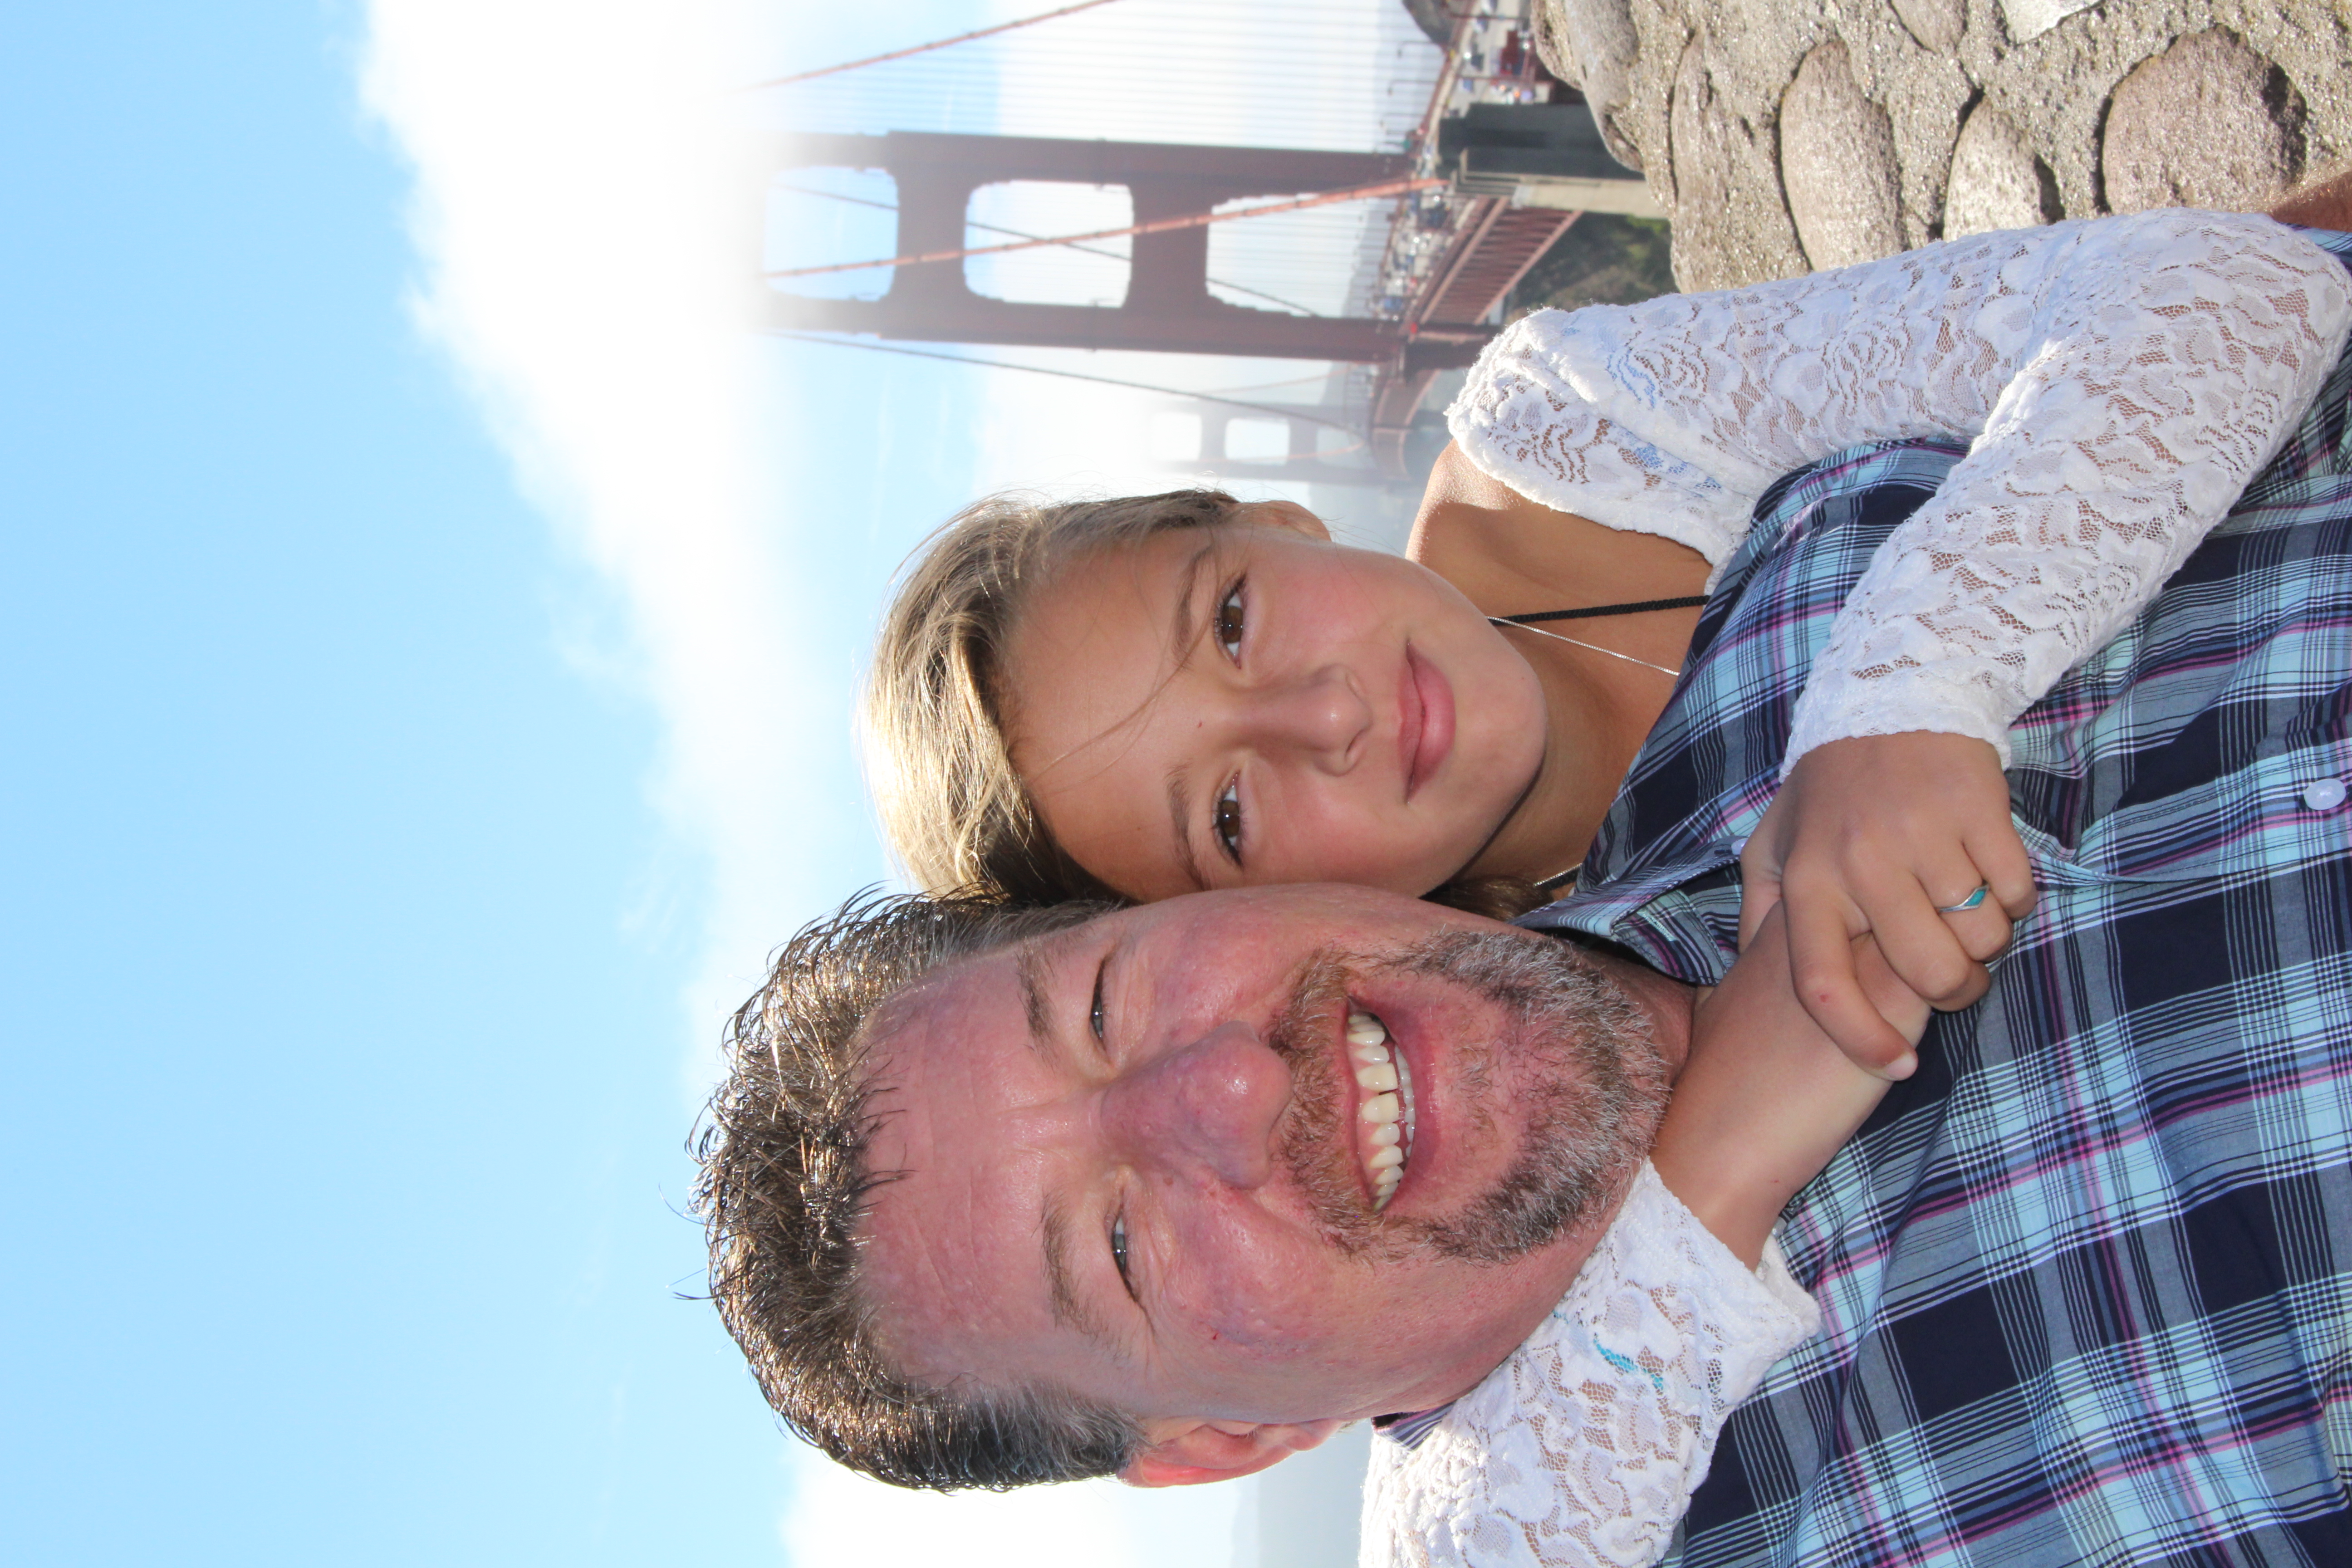 Malia and Rob at the Golden Gate Bridge.